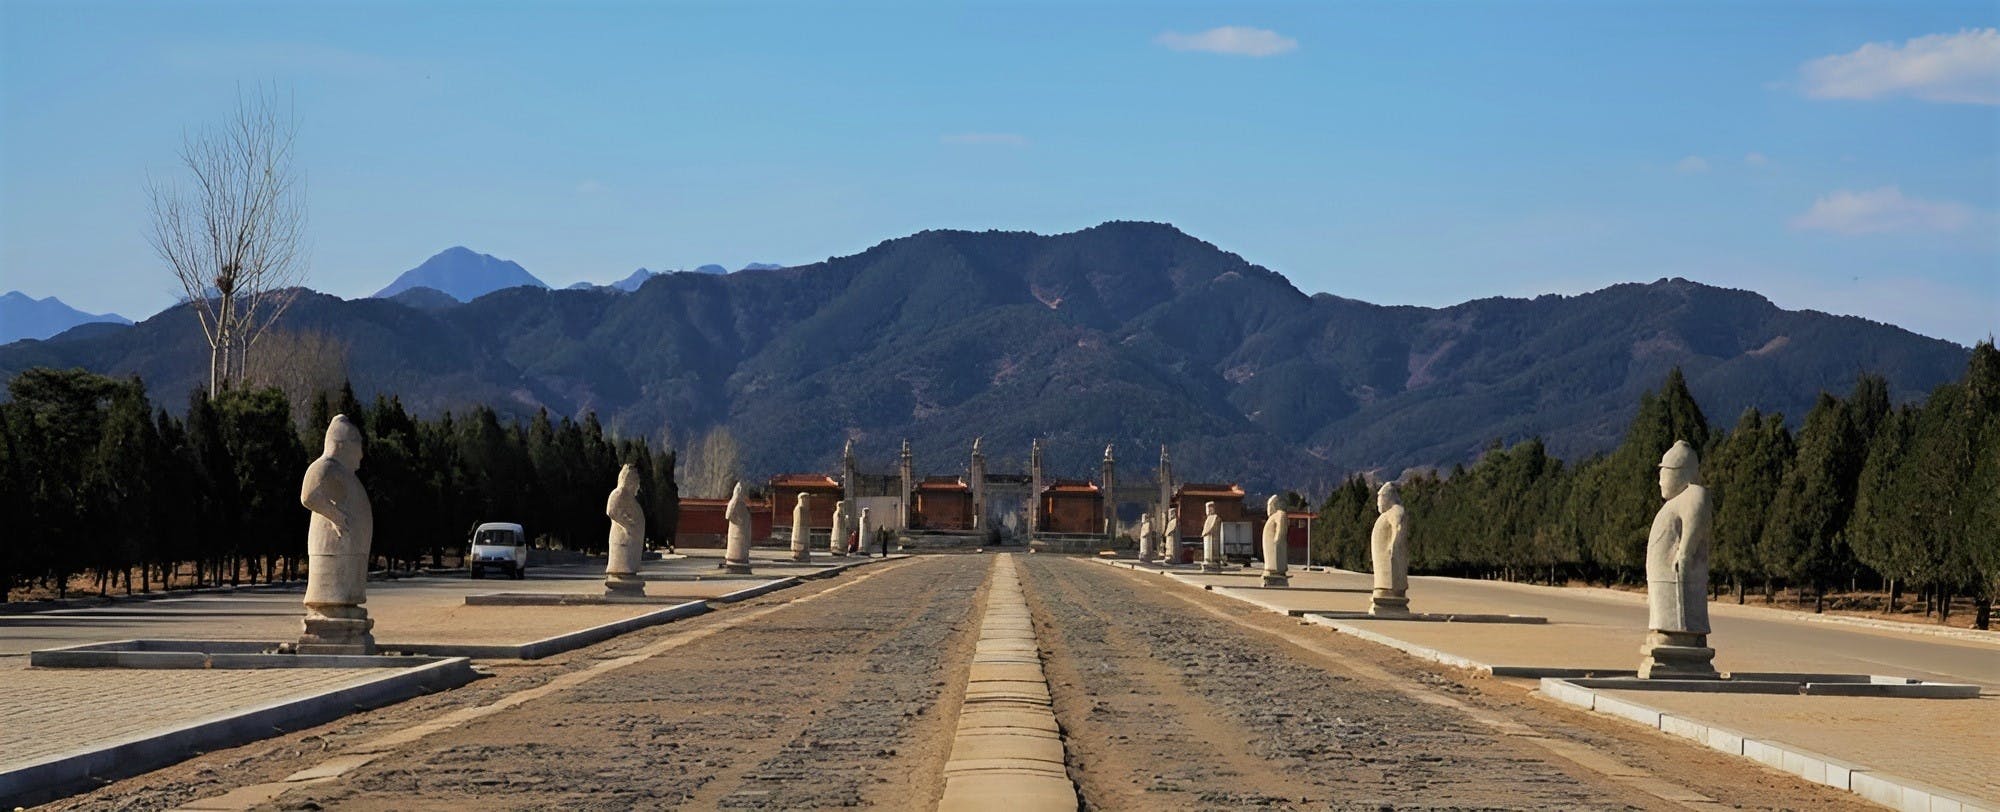 Private Tour durch die Chinesische Mauer von Huangyaguan und die östlichen Qing-Gräber